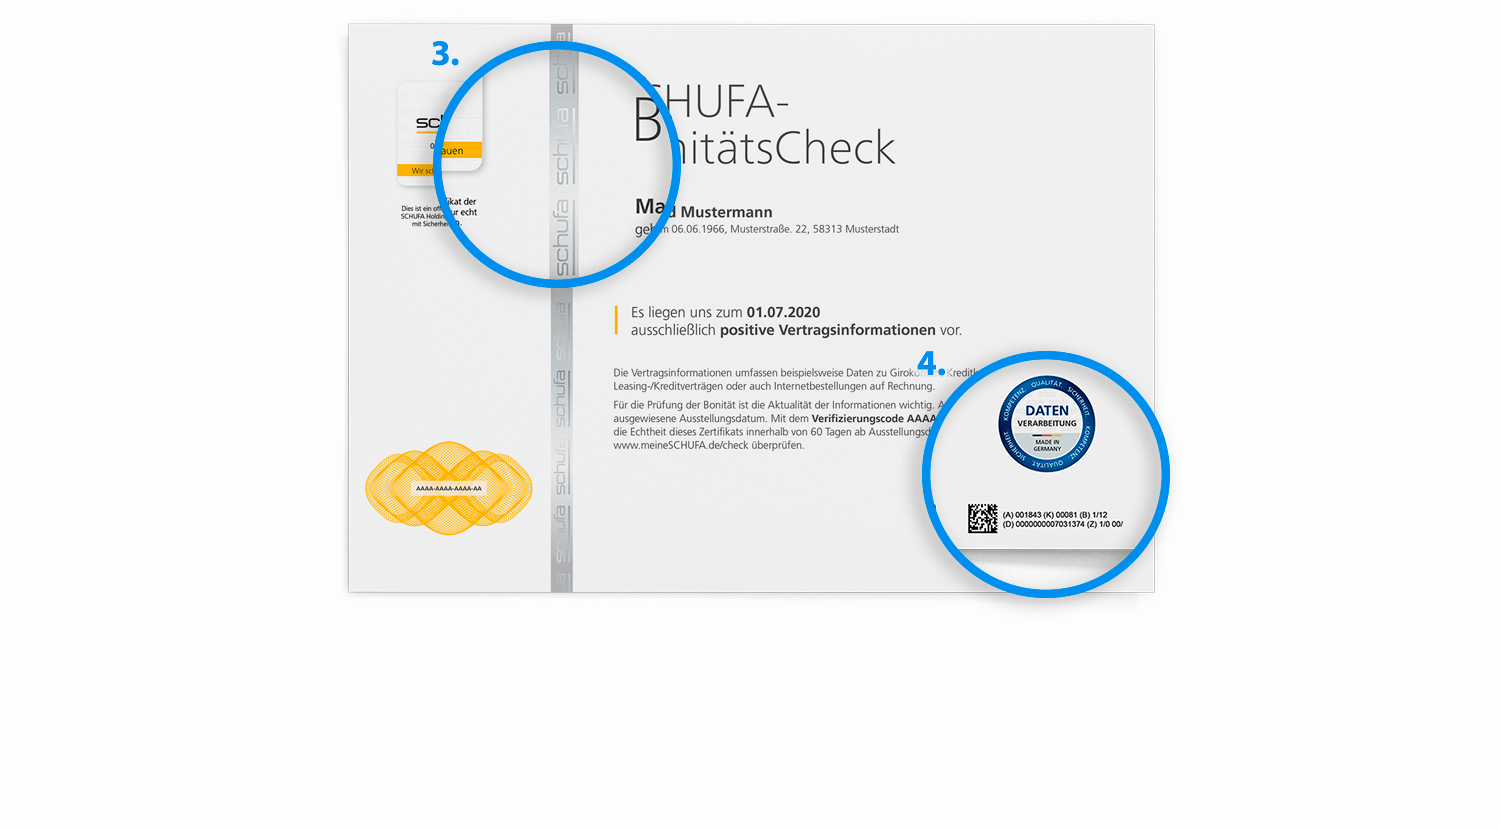 Das Zertifikat des SCHUFA-BonitätsChecks mit Hervorhebungen des Hologrammstreifens und deutscher Standards bei der Datenverarbeitung